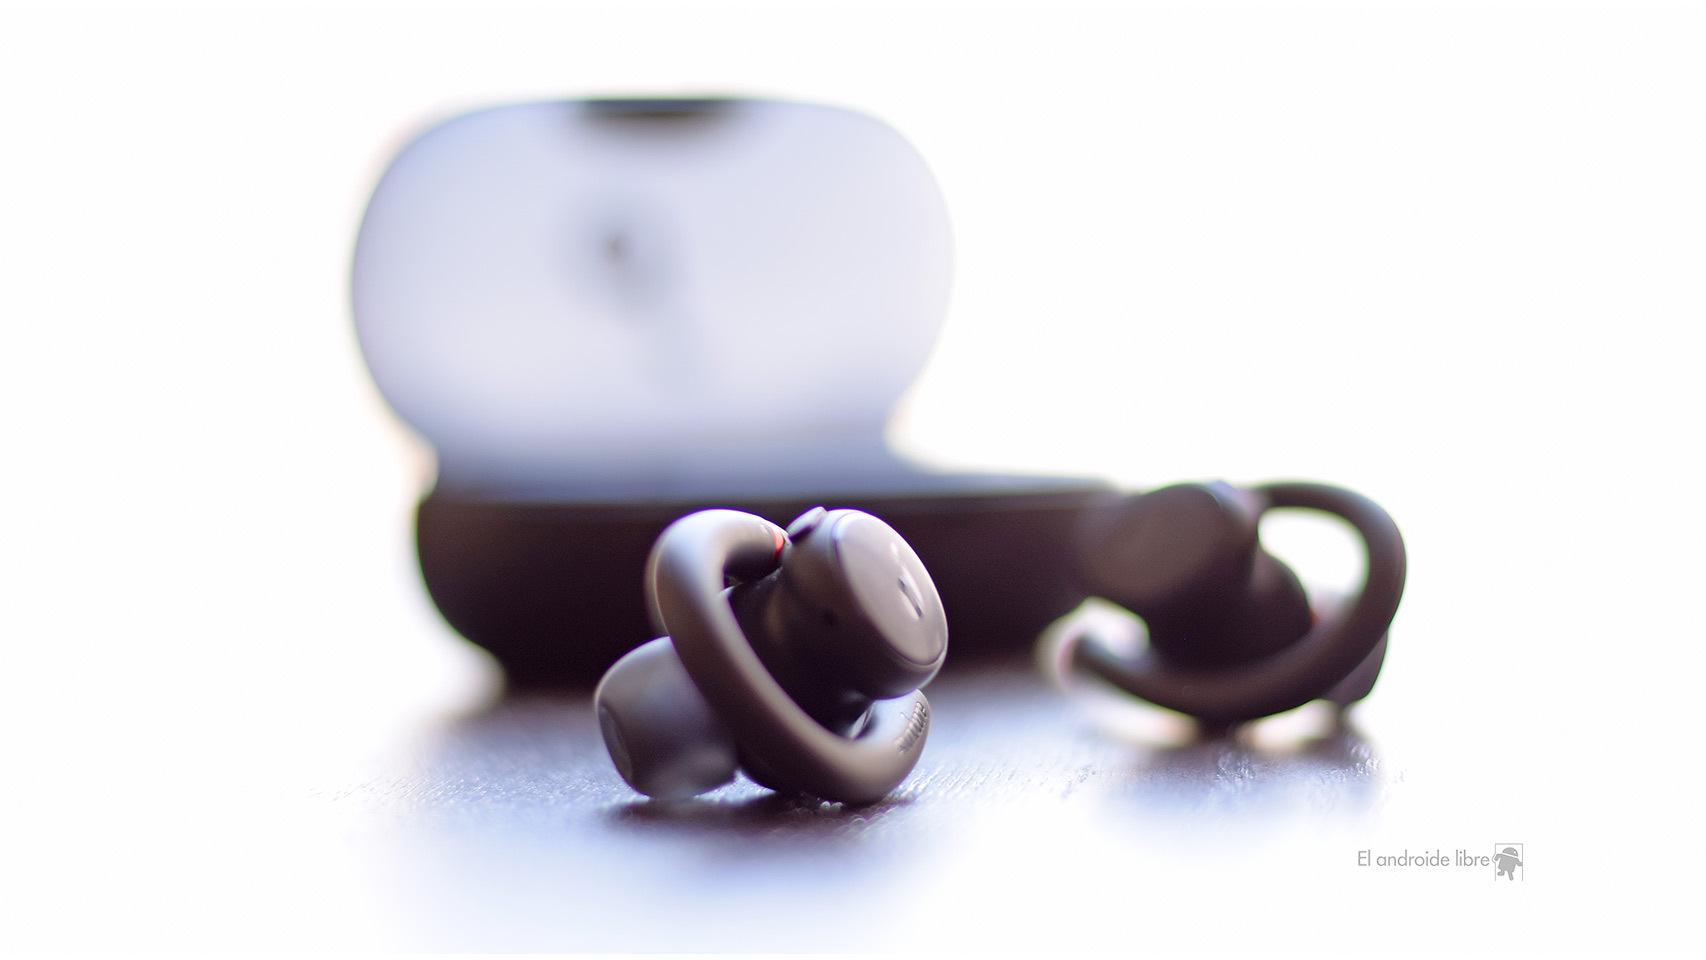 SoundCore Liberty 3 Pro, análisis: calidad brutal y la mejor app móvil para  unos auriculares